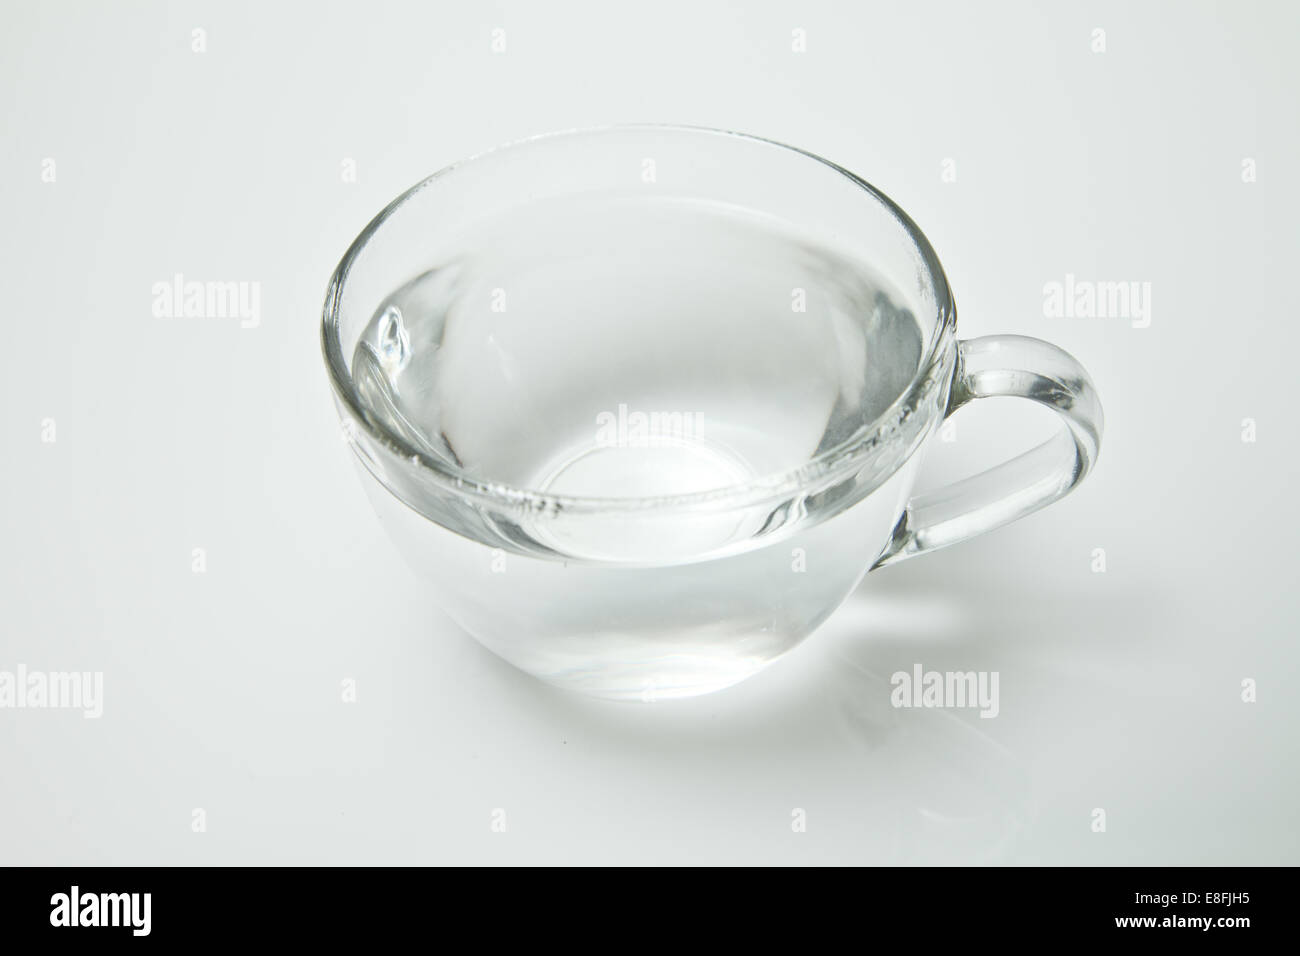 Tazza da tè in vetro riempita con acqua calda su sfondo bianco Foto Stock